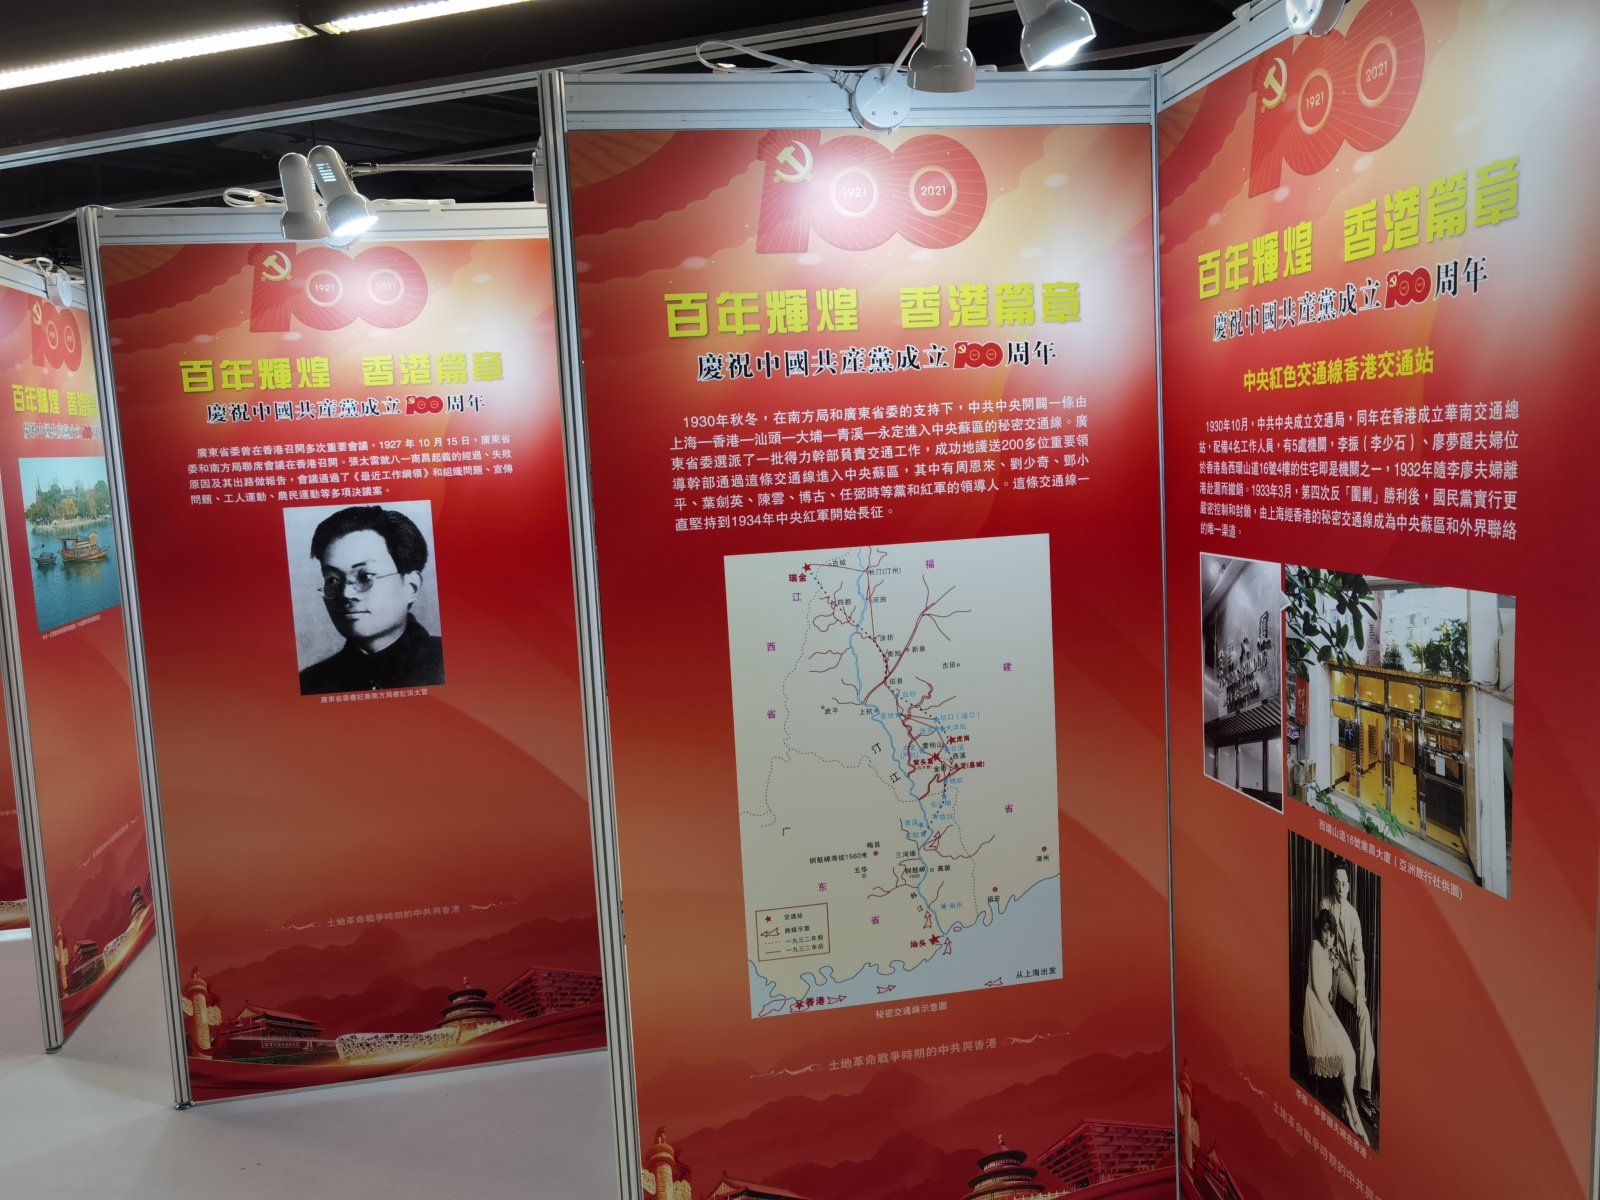 「百年輝煌 香港篇章 慶祝中國共產黨成立100周年大型圖片展」開幕典禮